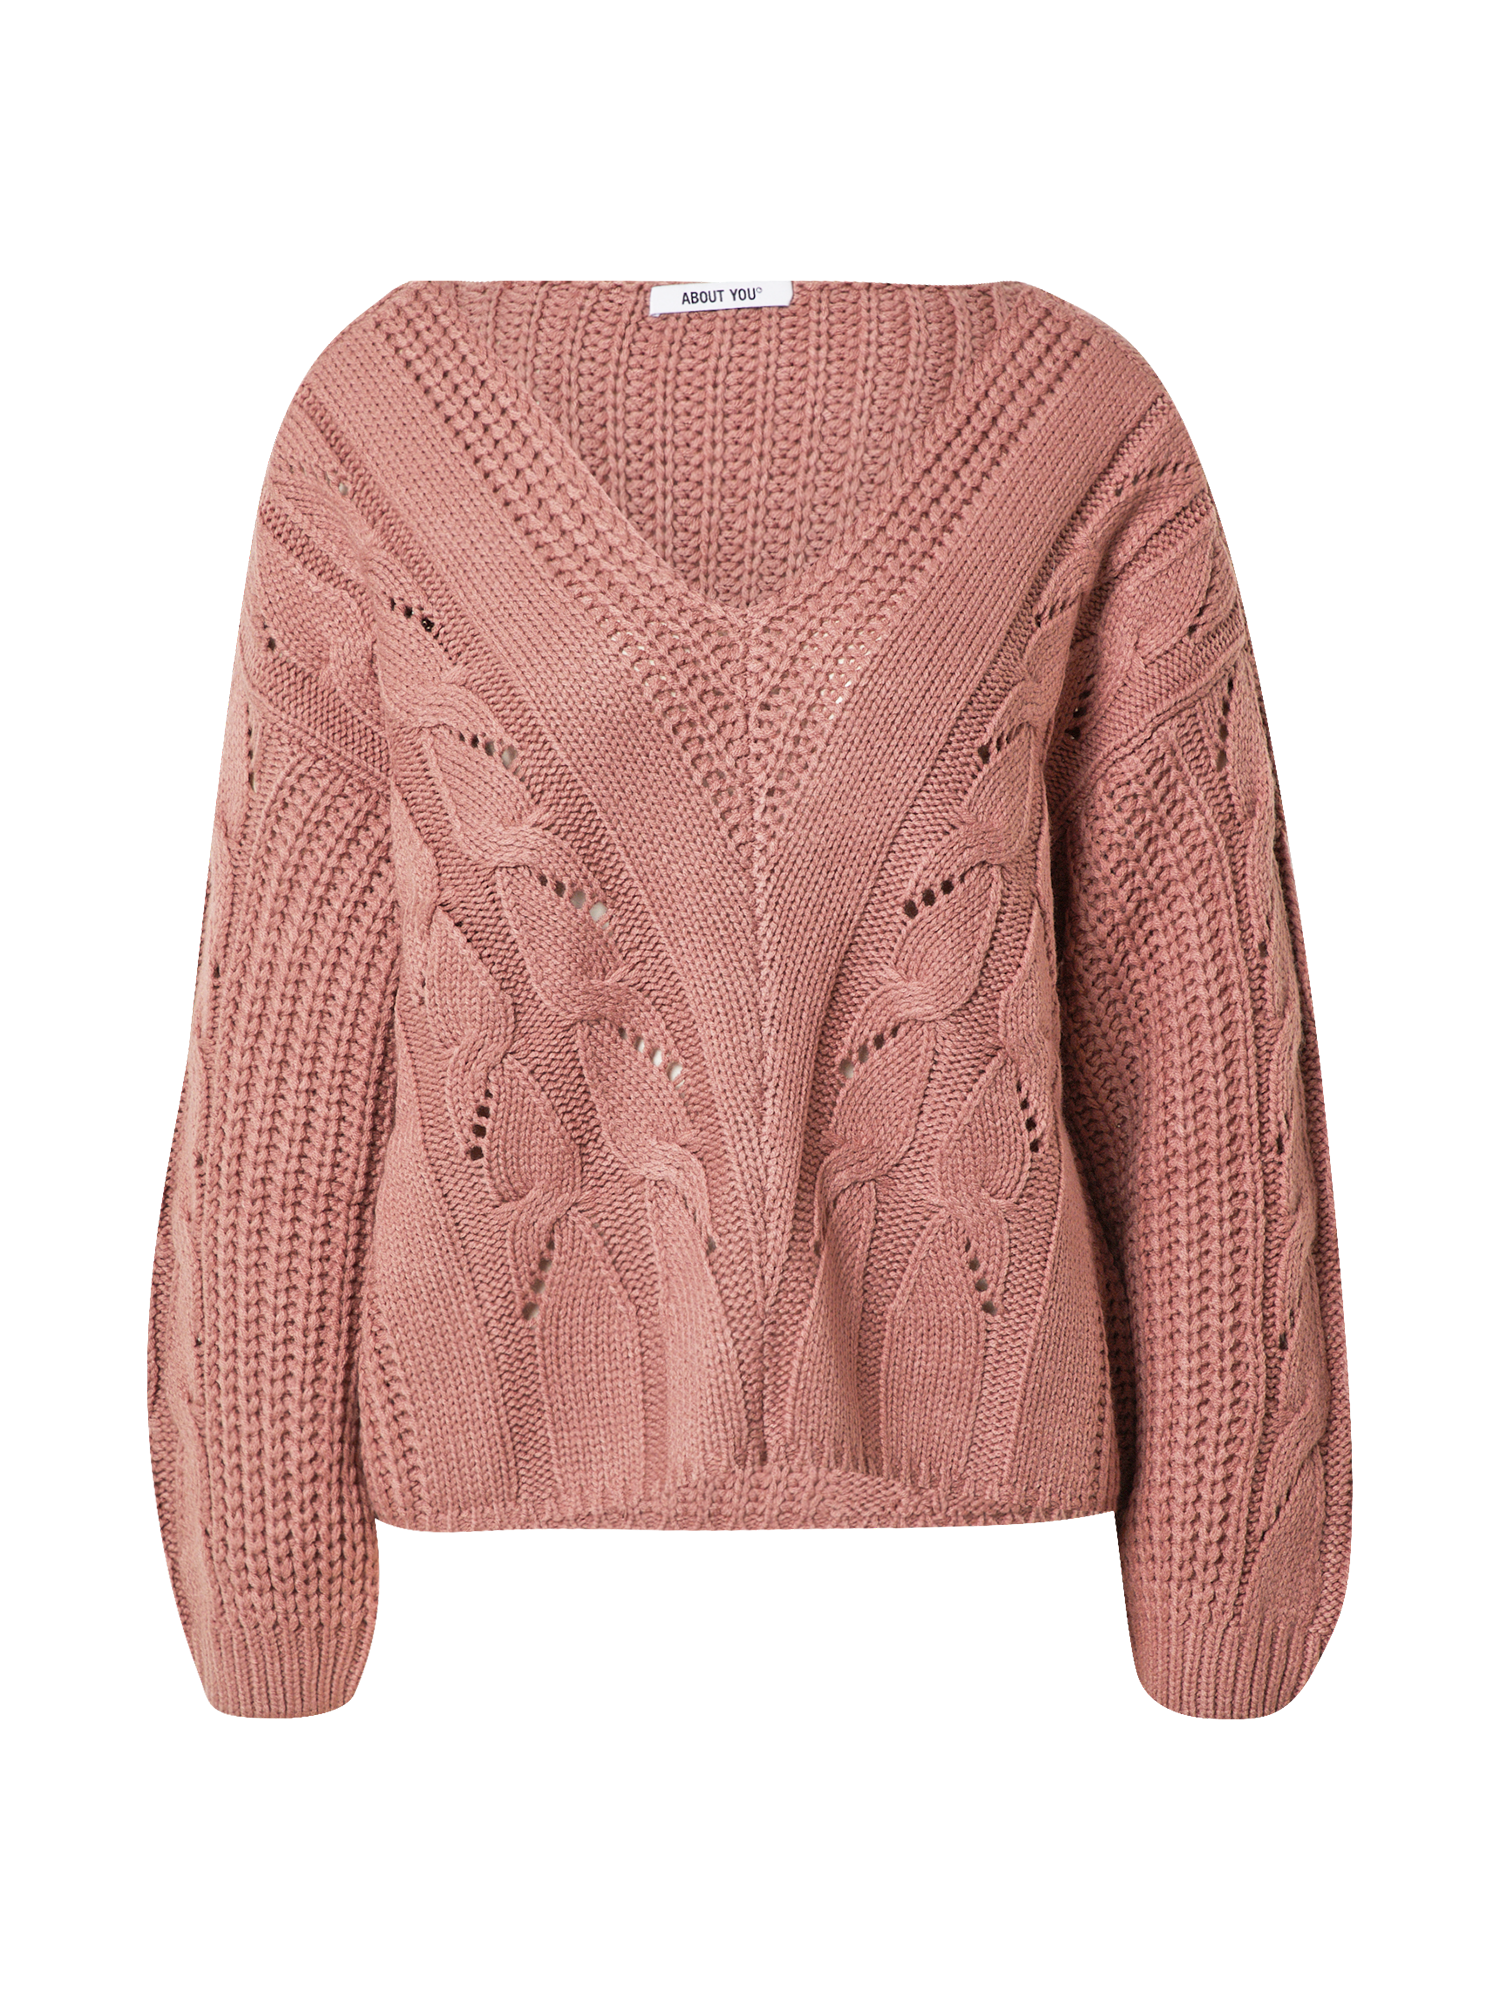 Swetry & dzianina Odzież  Sweter Rosalie w kolorze Różowym 